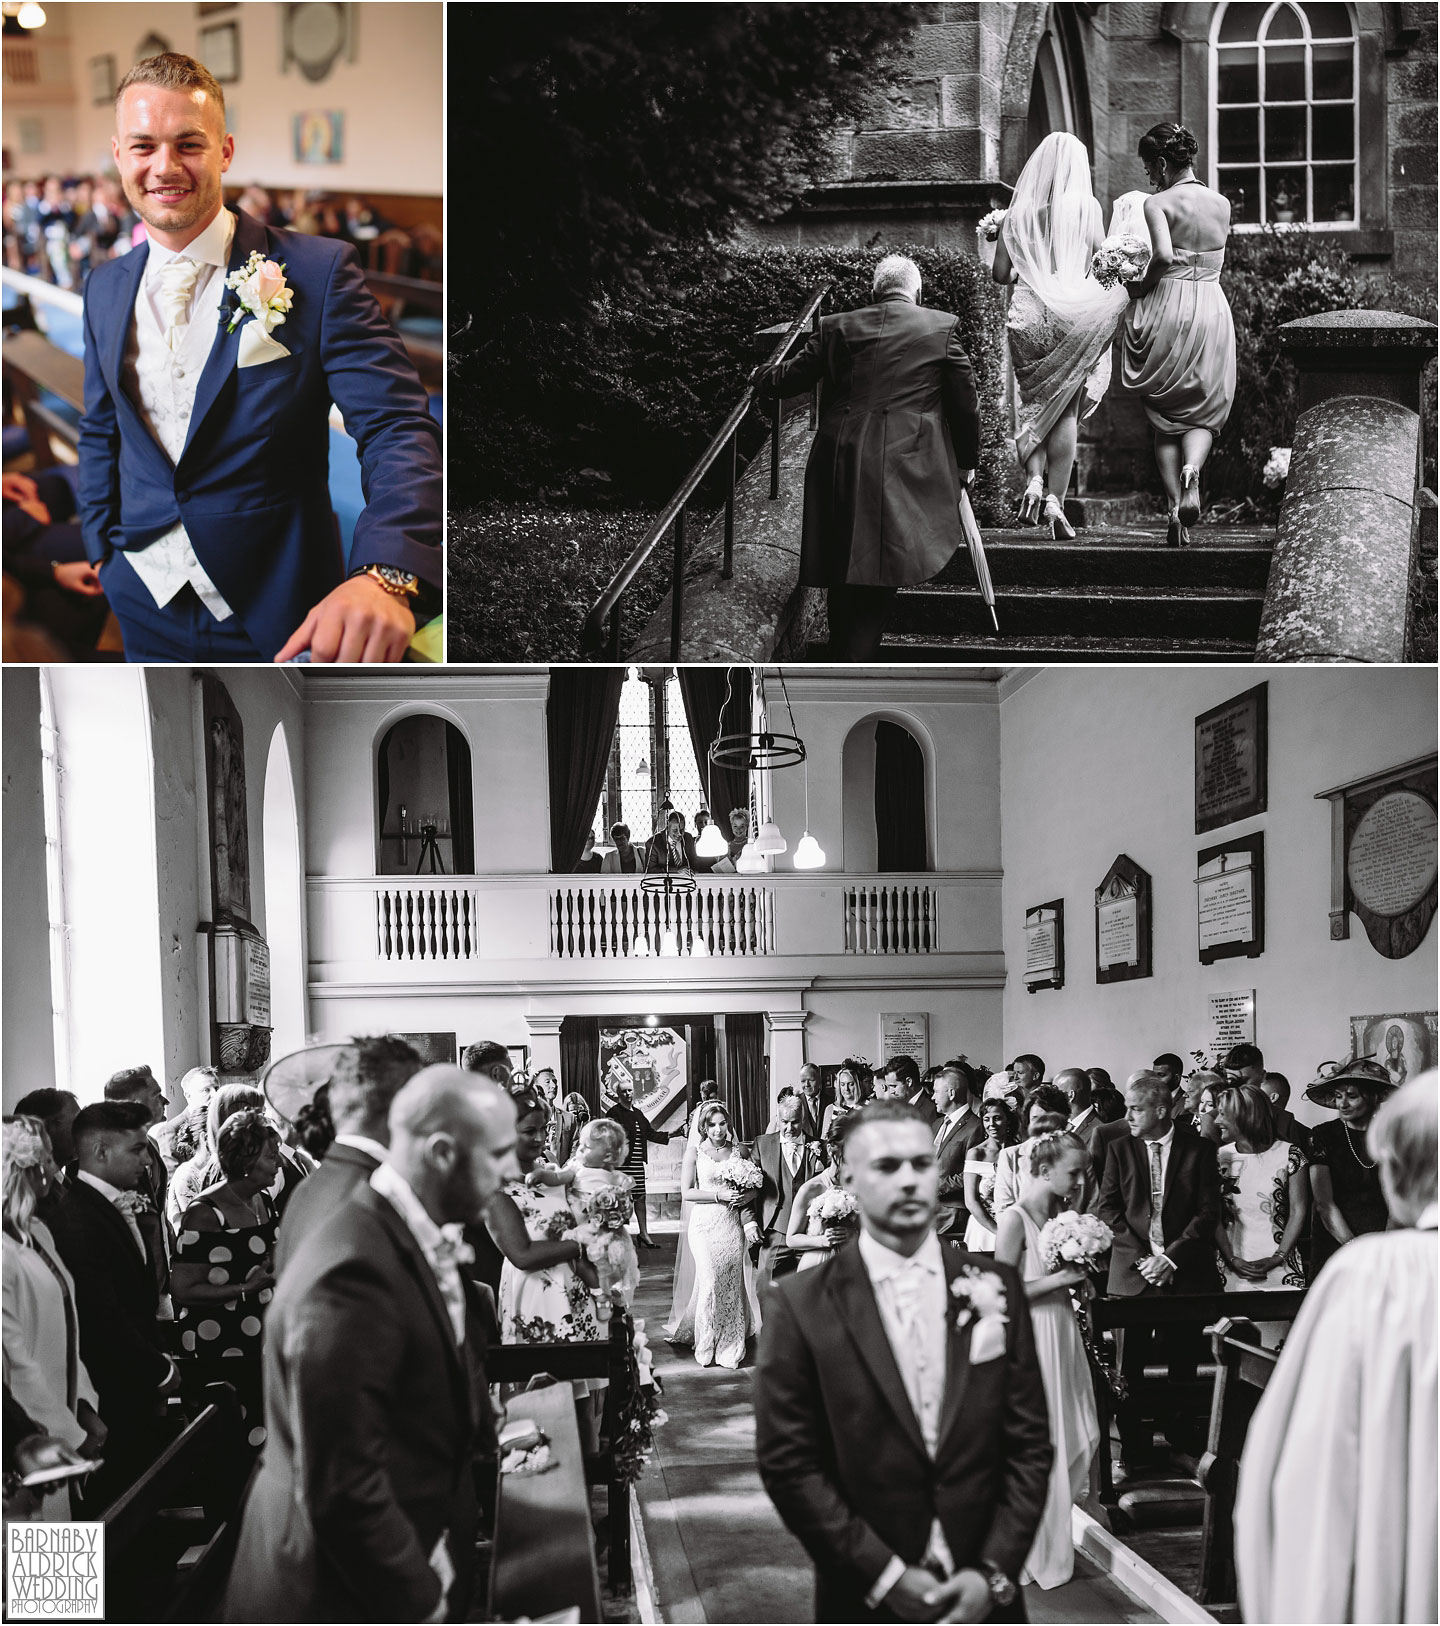 Denton Hall Wedding Photography, Wedding photos at Denton Hall in Yorkshire, Ilkley Wedding Photographer